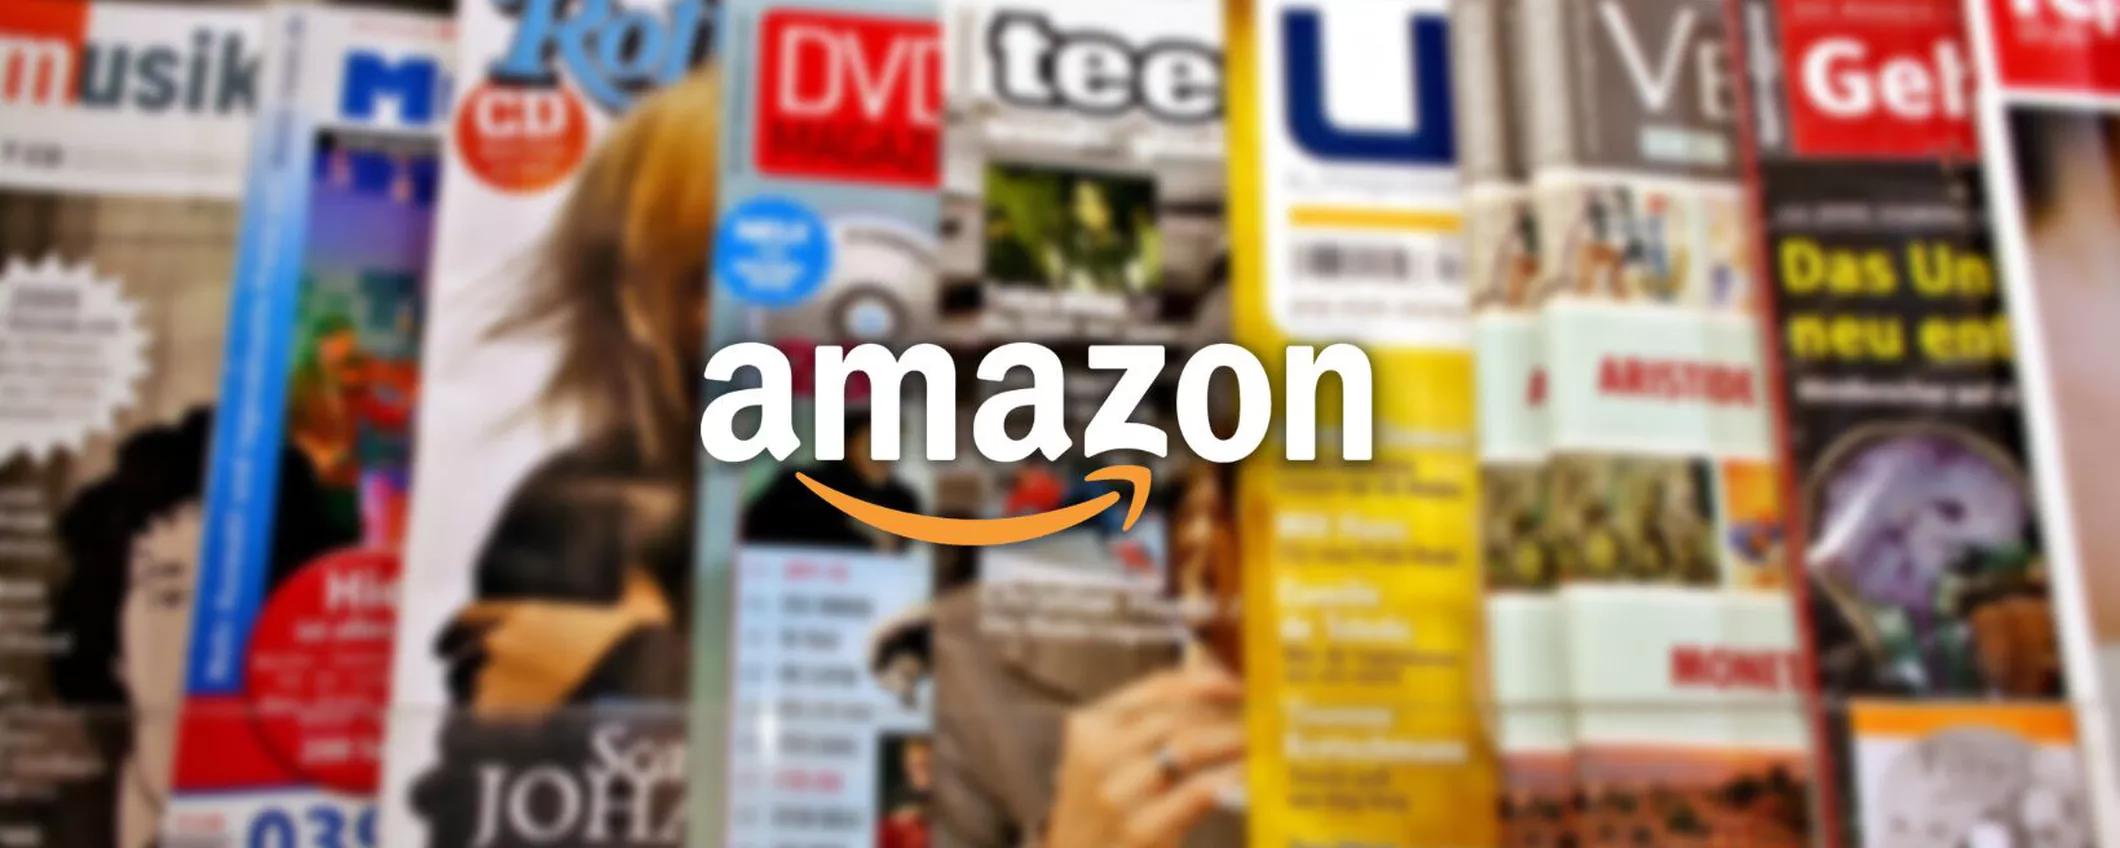 Amazon, NOVITÀ pazzesca: nuova sezione dedicata alle riviste italiane in digitale